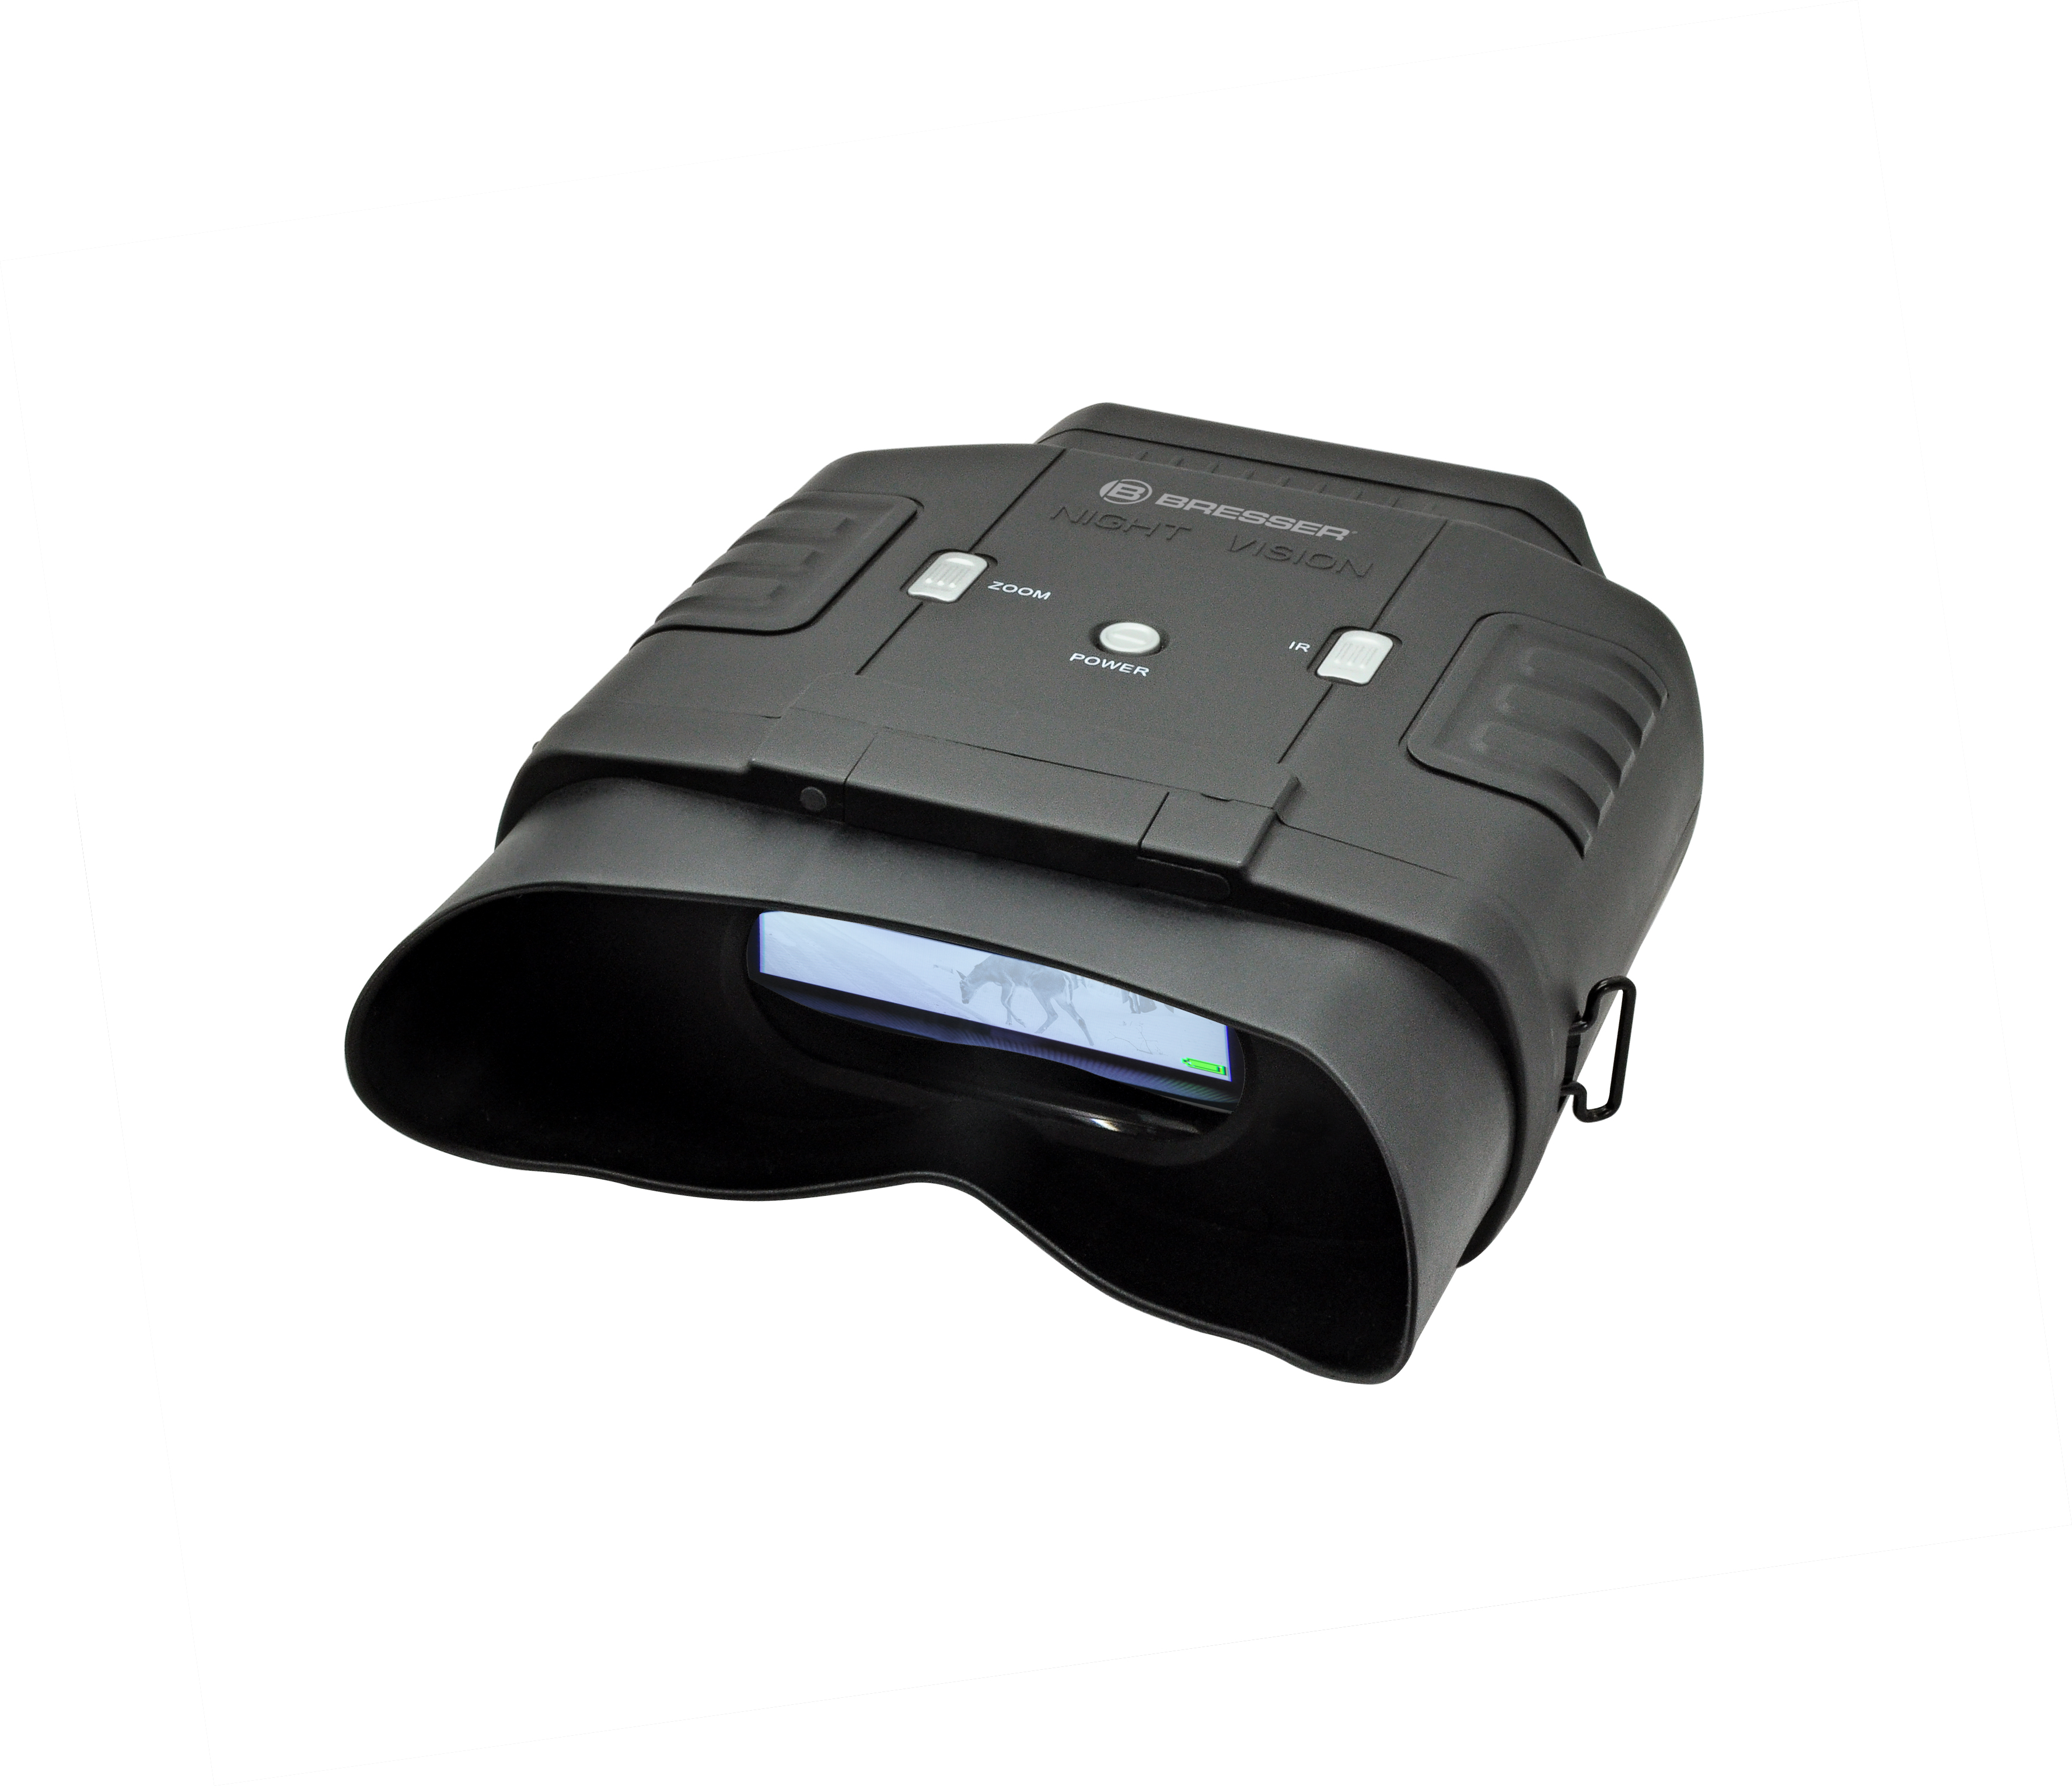 Bresser Digitales Nachtsichtgerät Binokular 3X mit digitaler Zoom-Funktion 3X & 1x NV mit elastischen Bändern zuschaltbarer Infratotbeleuchtung & Kopfhalterung für Action Cams & NV Binokular 